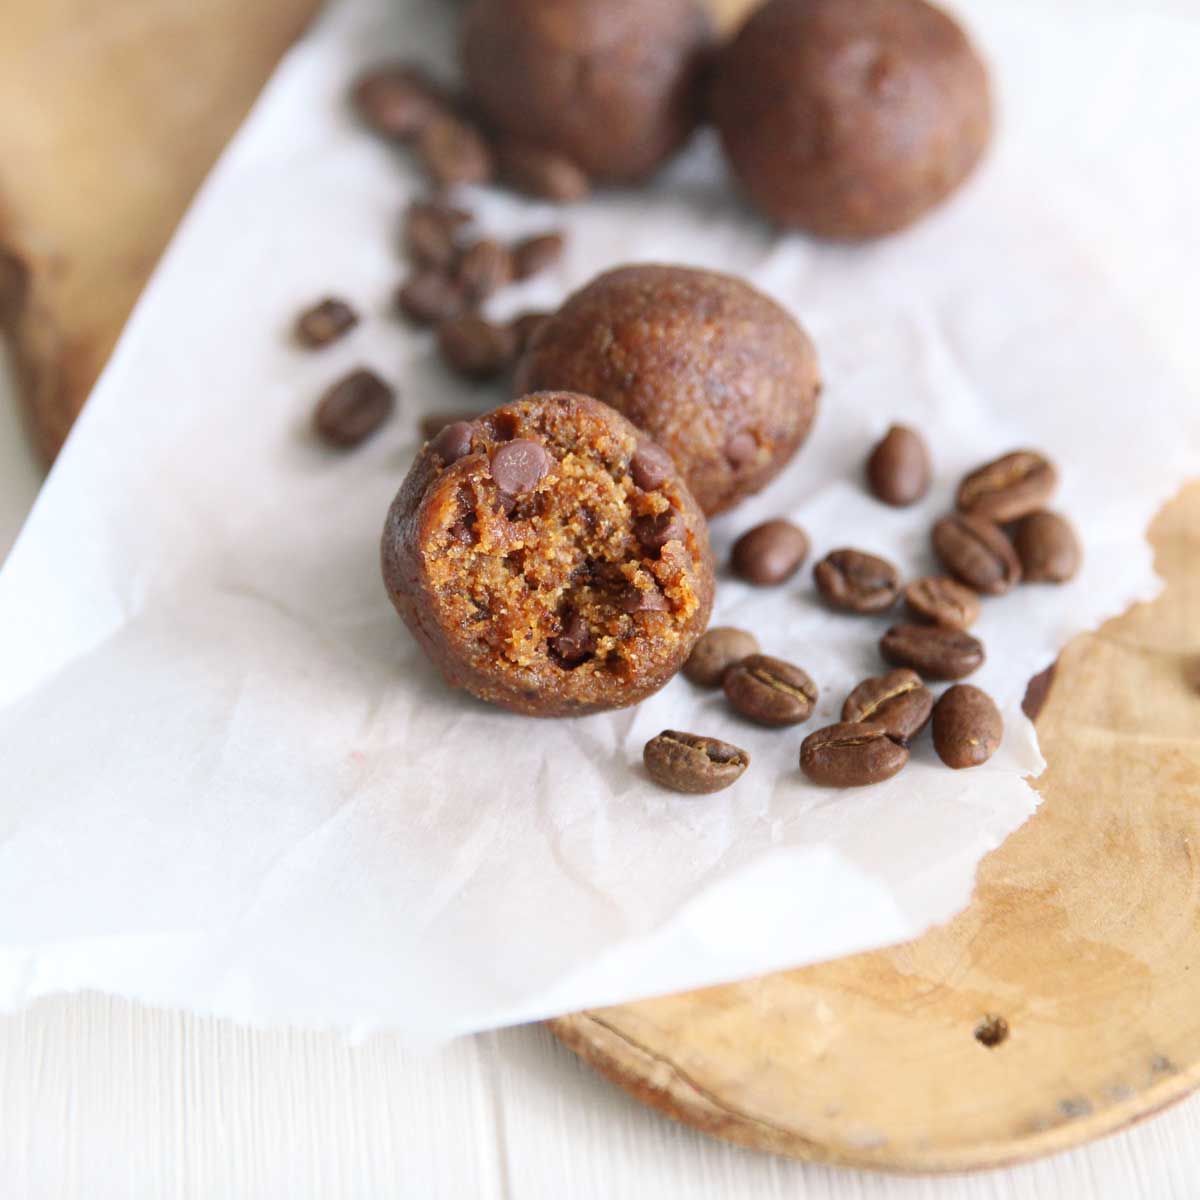 Protein Coffee Bean Cookies (The Best Healthy Vegan Snack) - coffee bean cookies